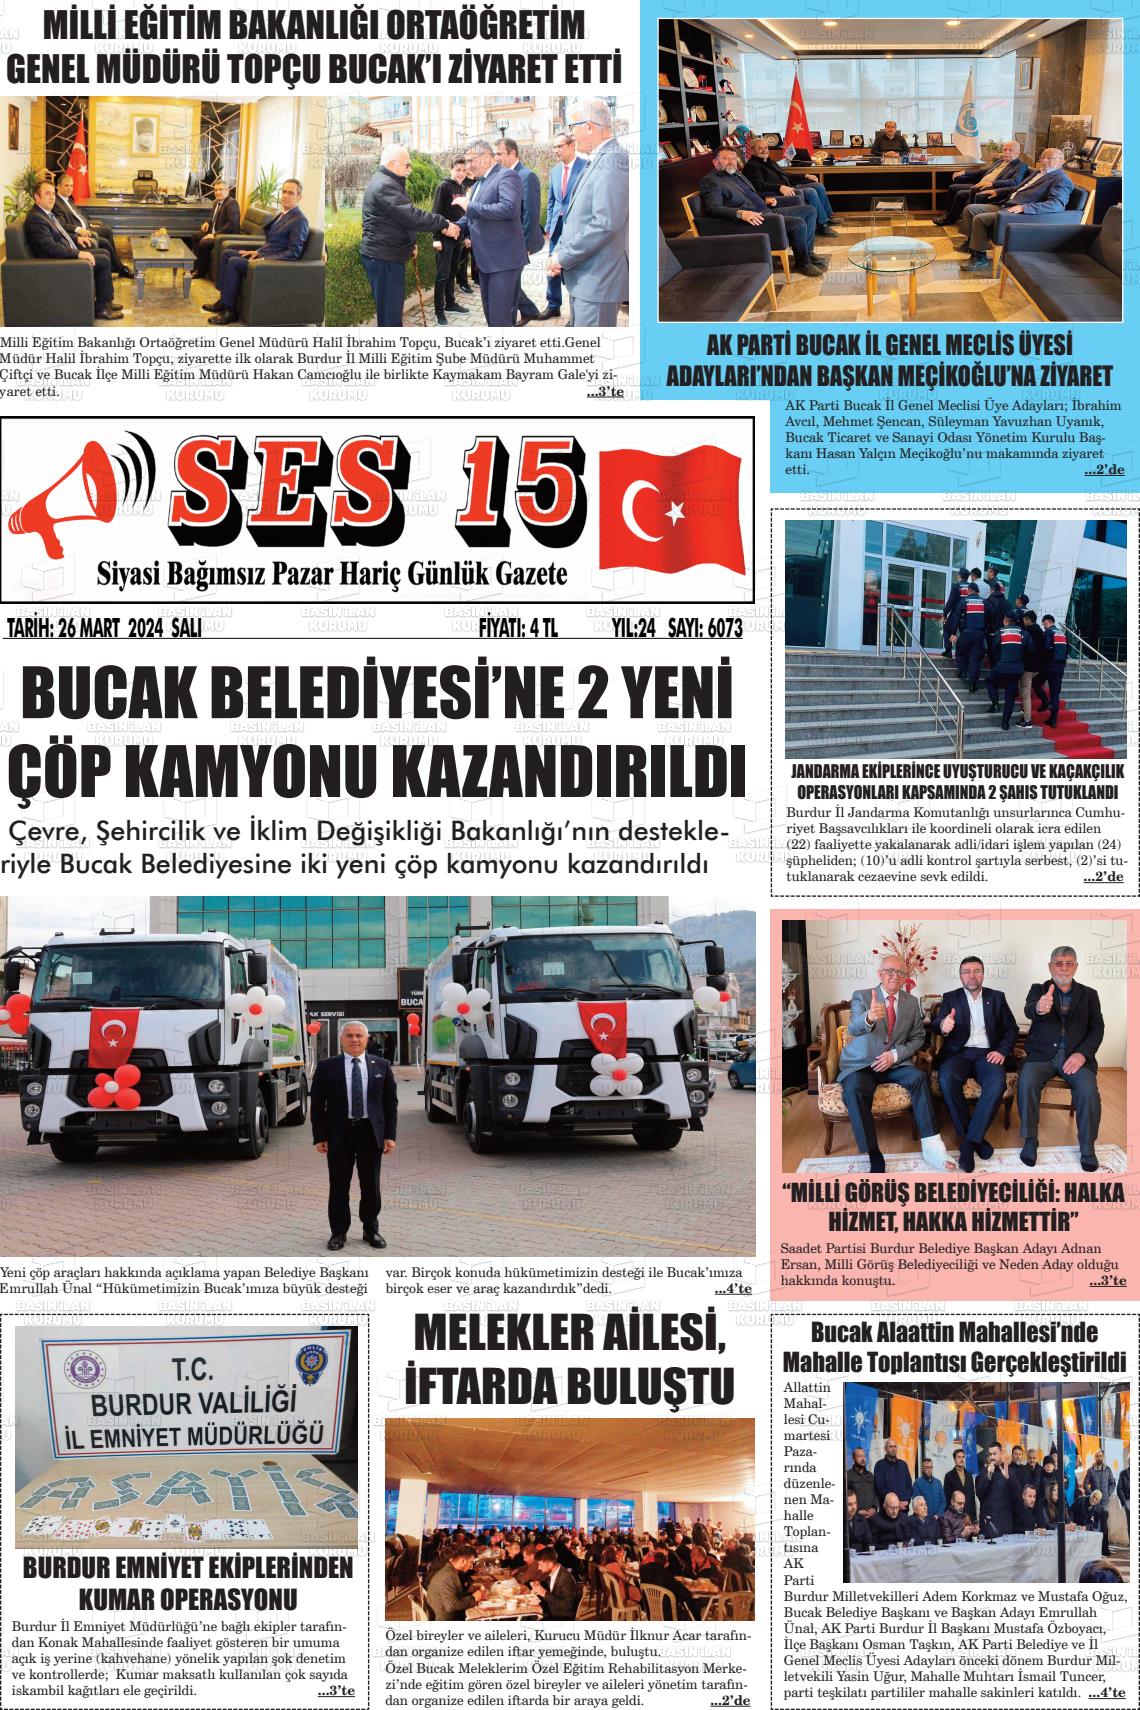 26 Mart 2024 Ses 15 Gazete Manşeti